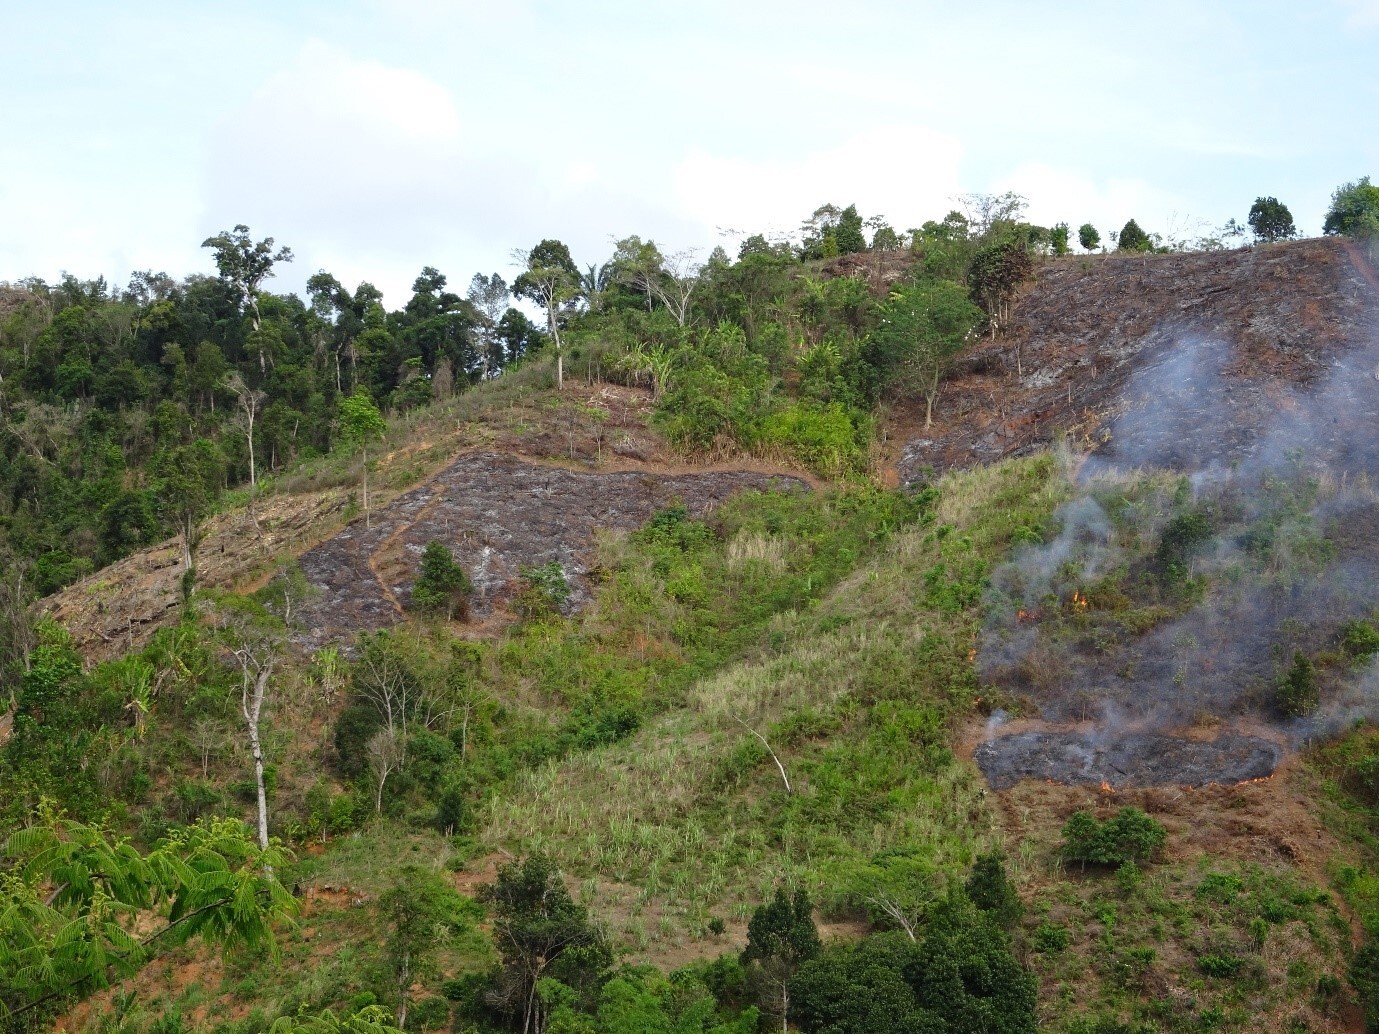 Die Brandrohdung für den Reisanbau ist der Hauptgrund für den Waldverlust in Nordost-Madagaskar. Vanilleagroforste, die auf bereits entwaldetem Land etabliert werden, könnten eine nachhaltige Alternative bieten.